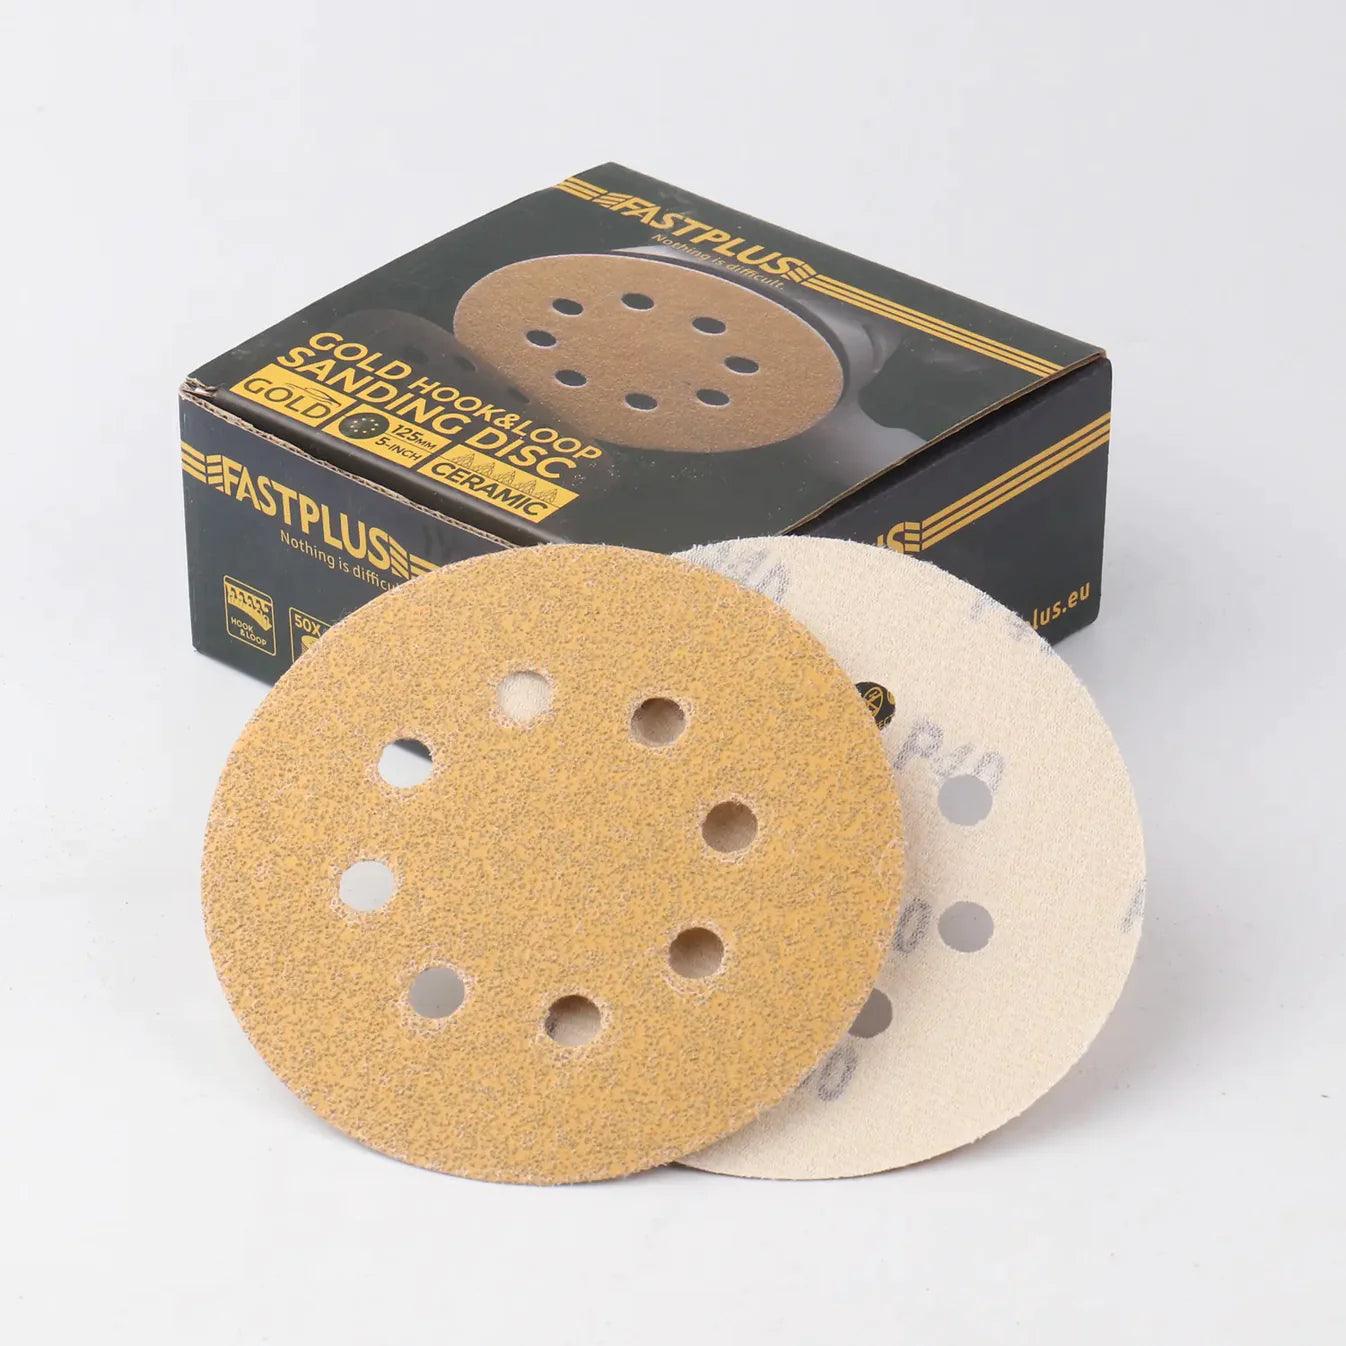 125mm Klett-schleifscheiben gold mirka f15 sanding discs fastplus P40